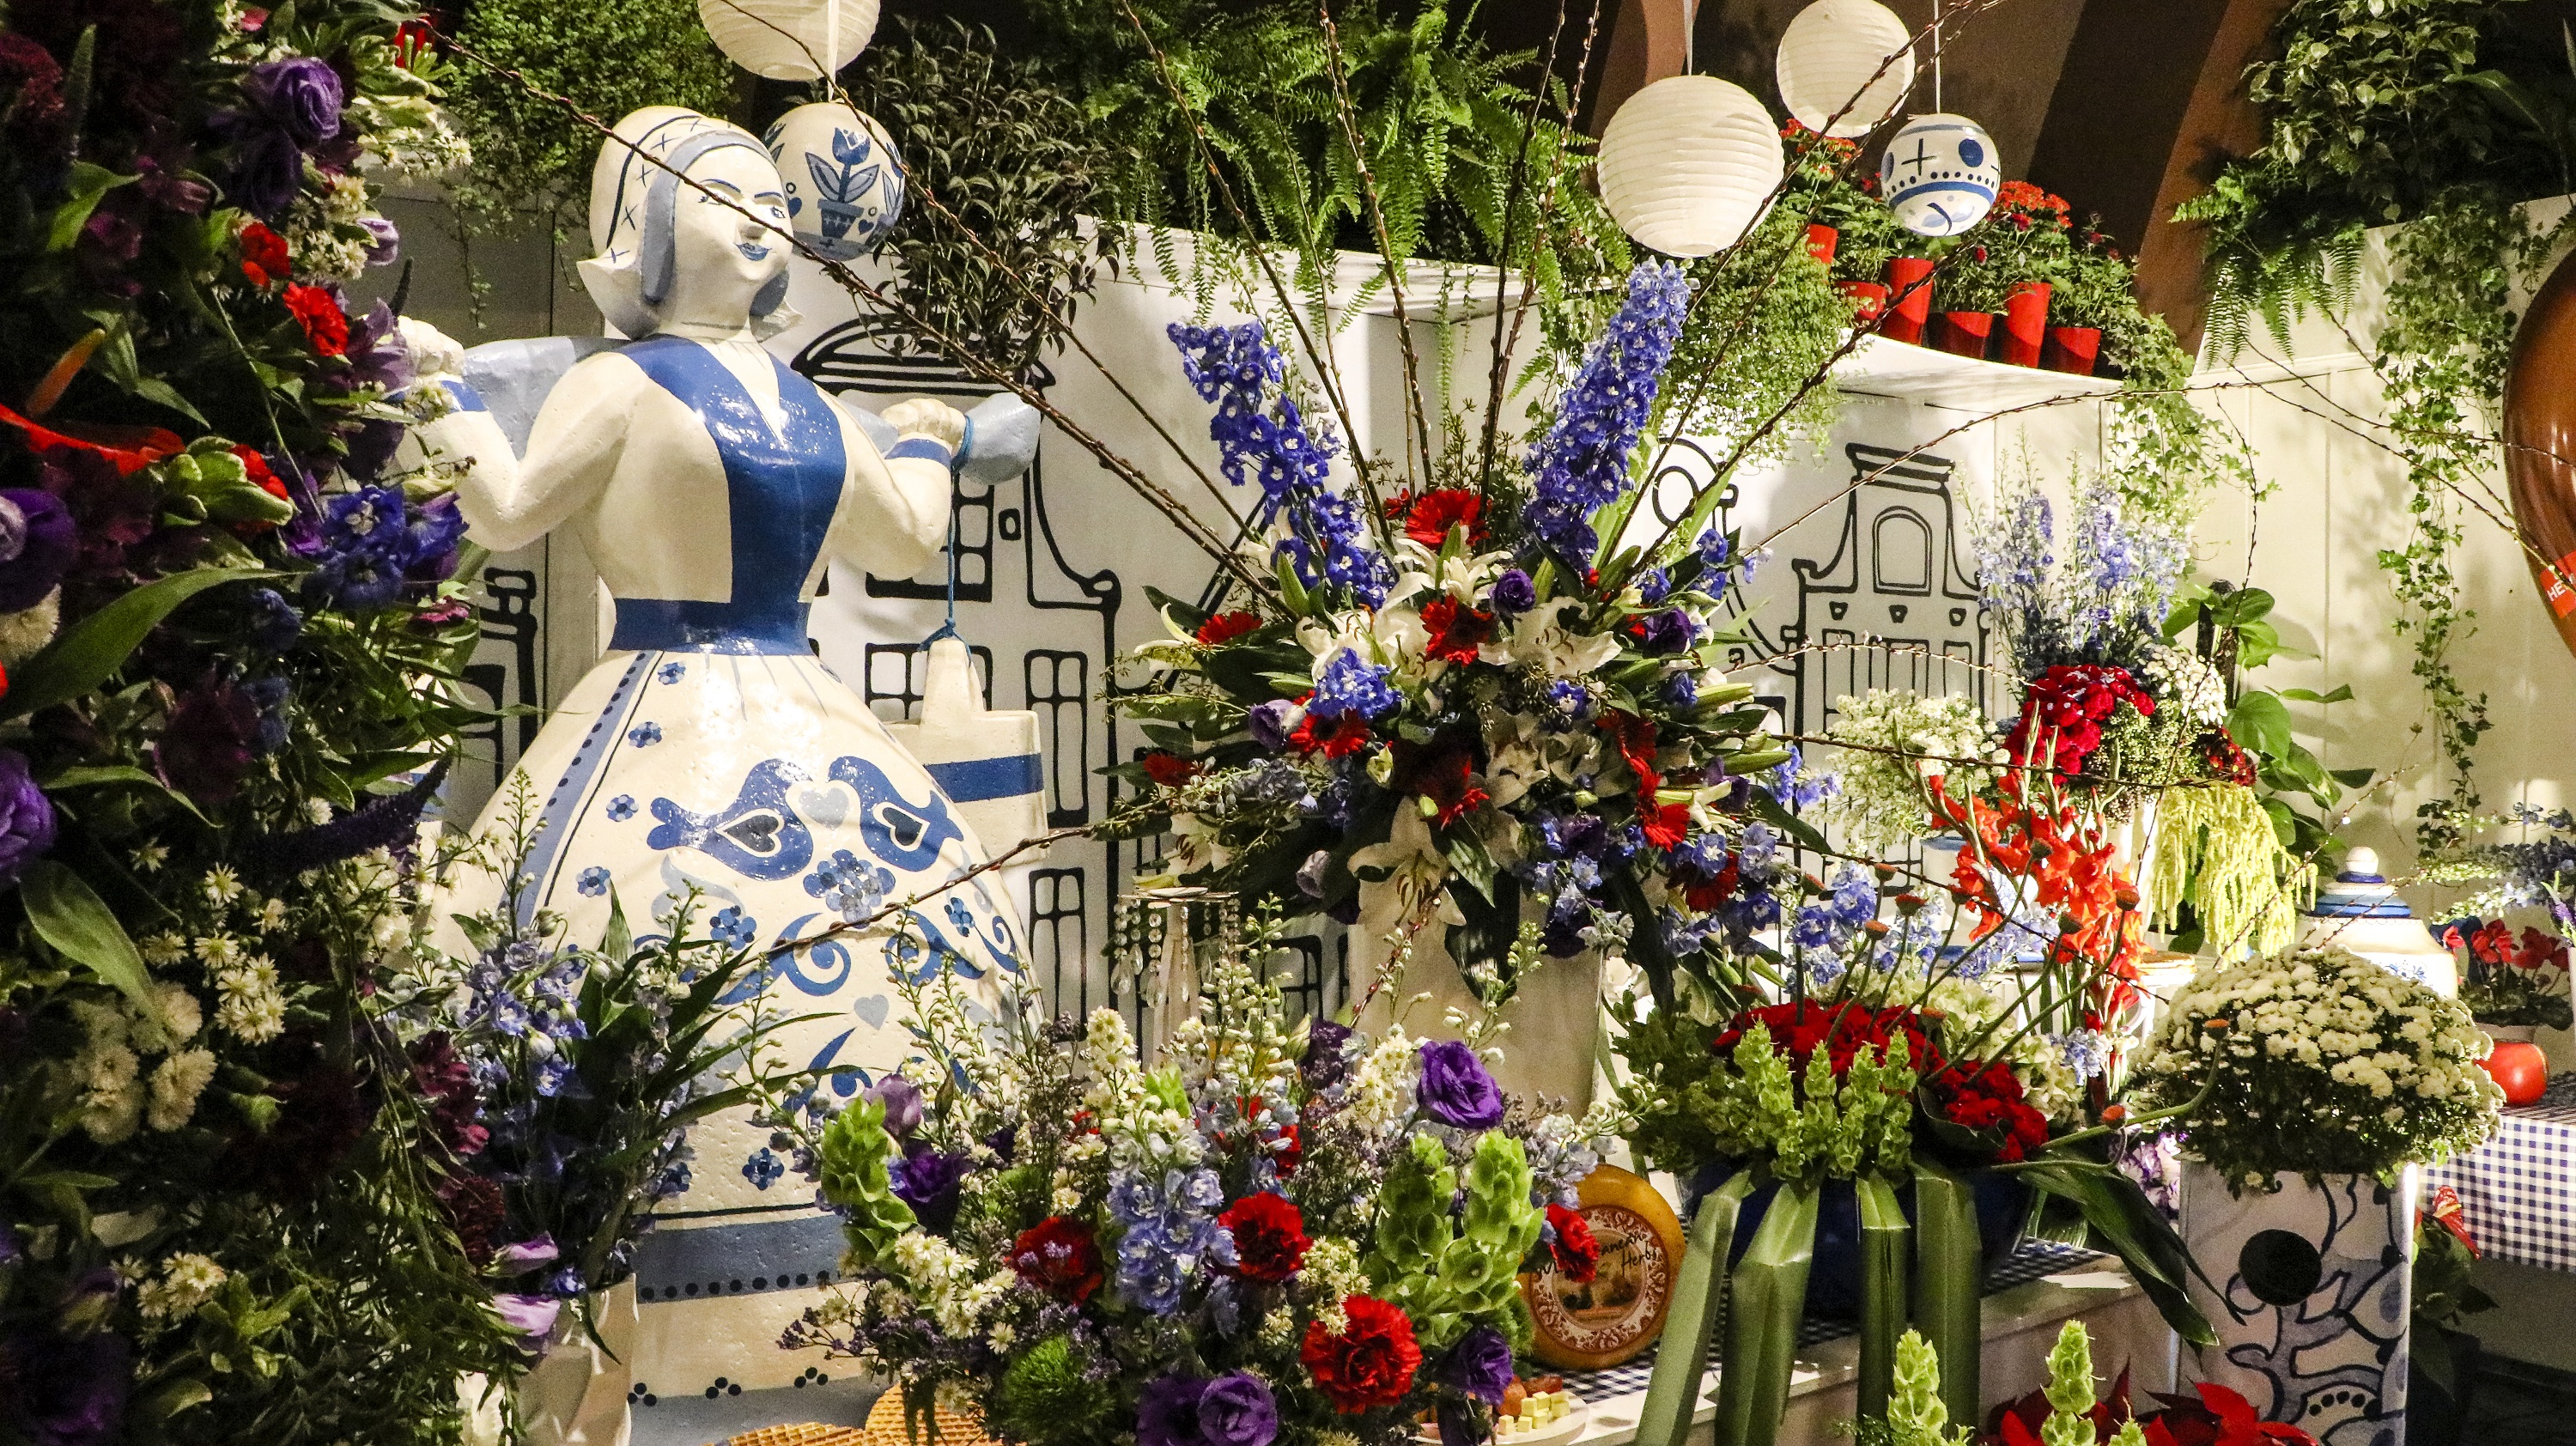 A fotografia colorida mostra vários arranjos de flores e bonecos de porcelana brancos com orgamentos azuis.